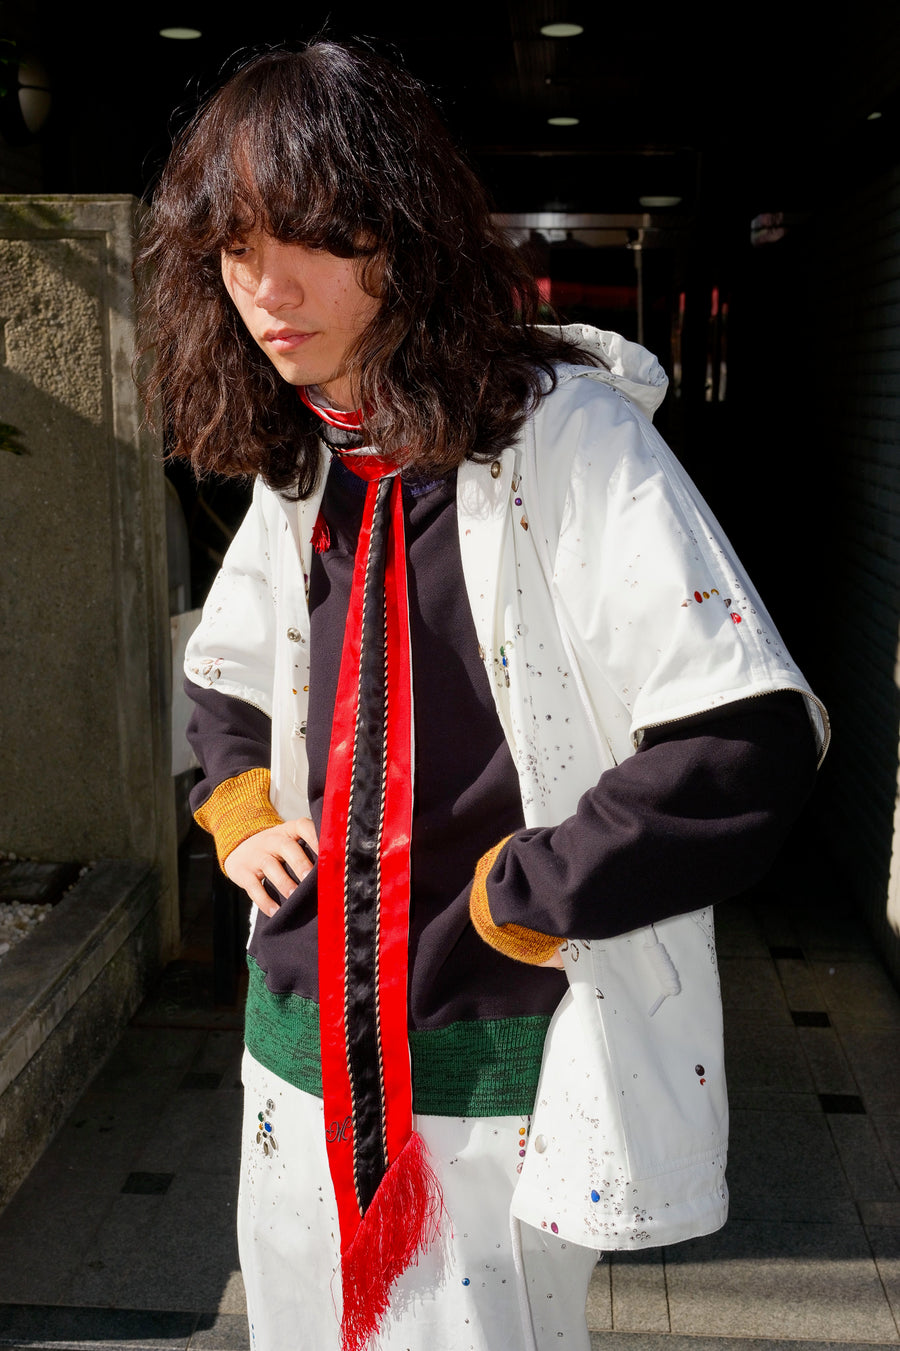 MASU(エムエーエスユー)のSUKA LONG SCARF RED(スカーフ)の通販